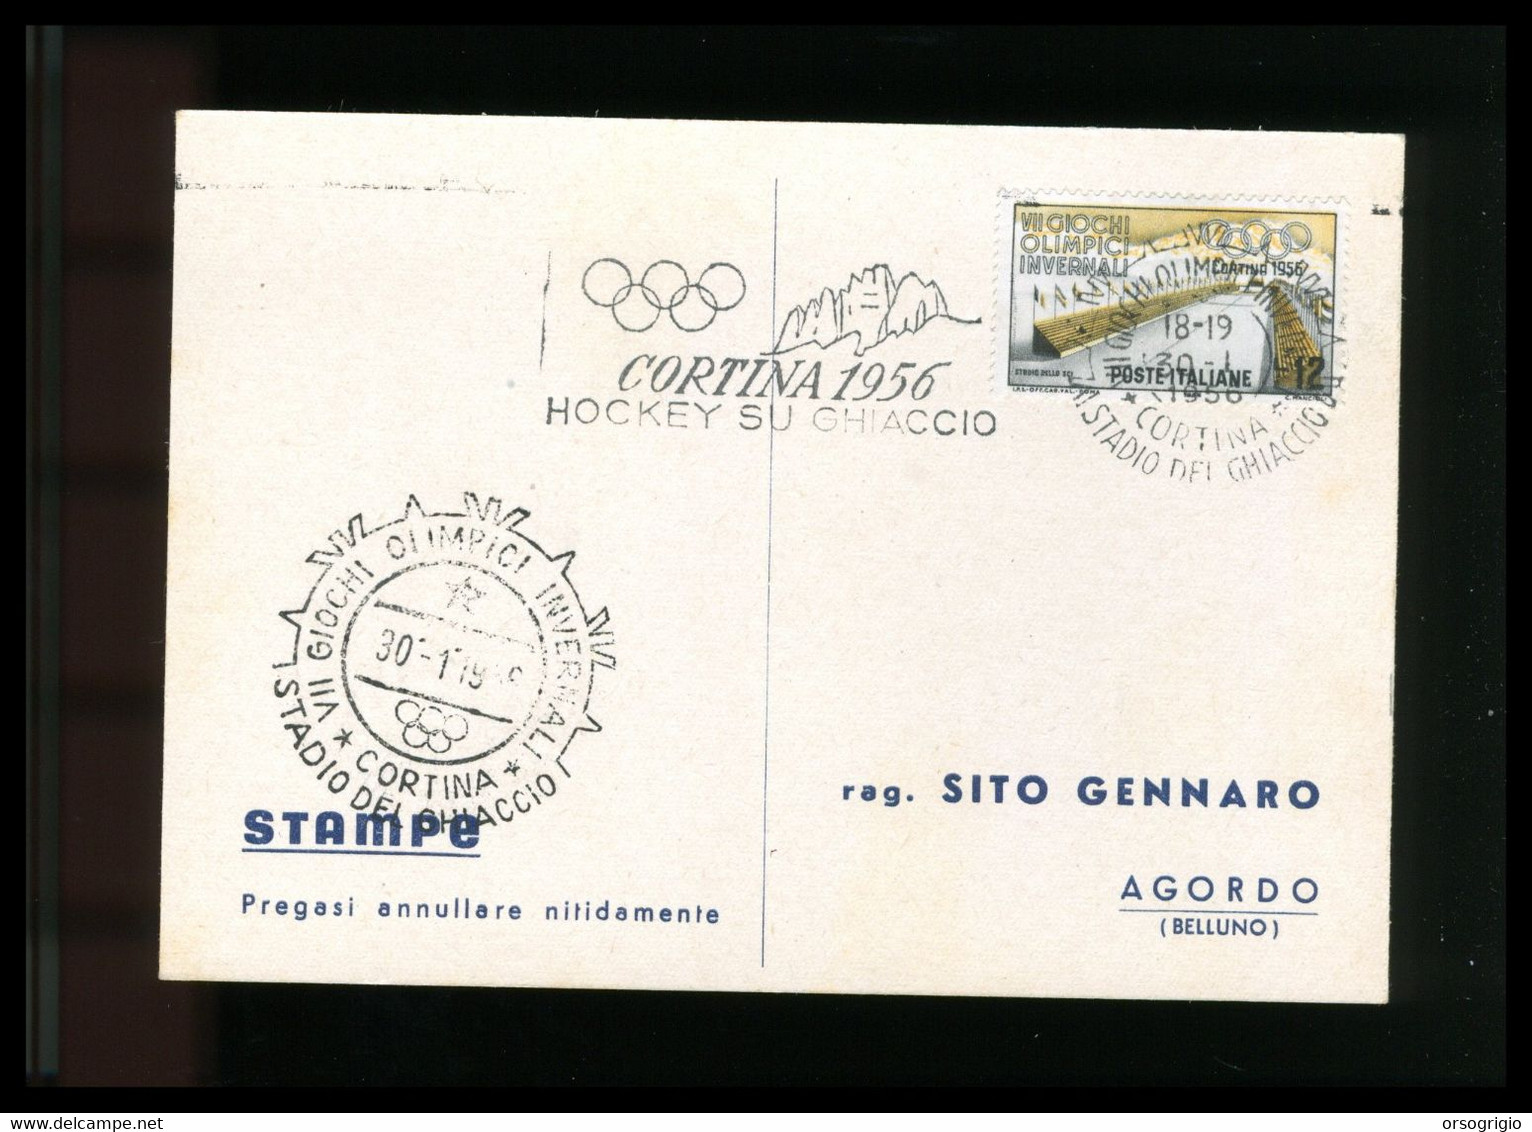 ITALIA - 1956 GIOCHI OLIMPICI INVERNALI Di CORTINA D'AMPEZZO - HOCKEY SU GHIACCIO -  30-1-1956    LUSSO - Invierno 1956: Cortina D'Ampezzo